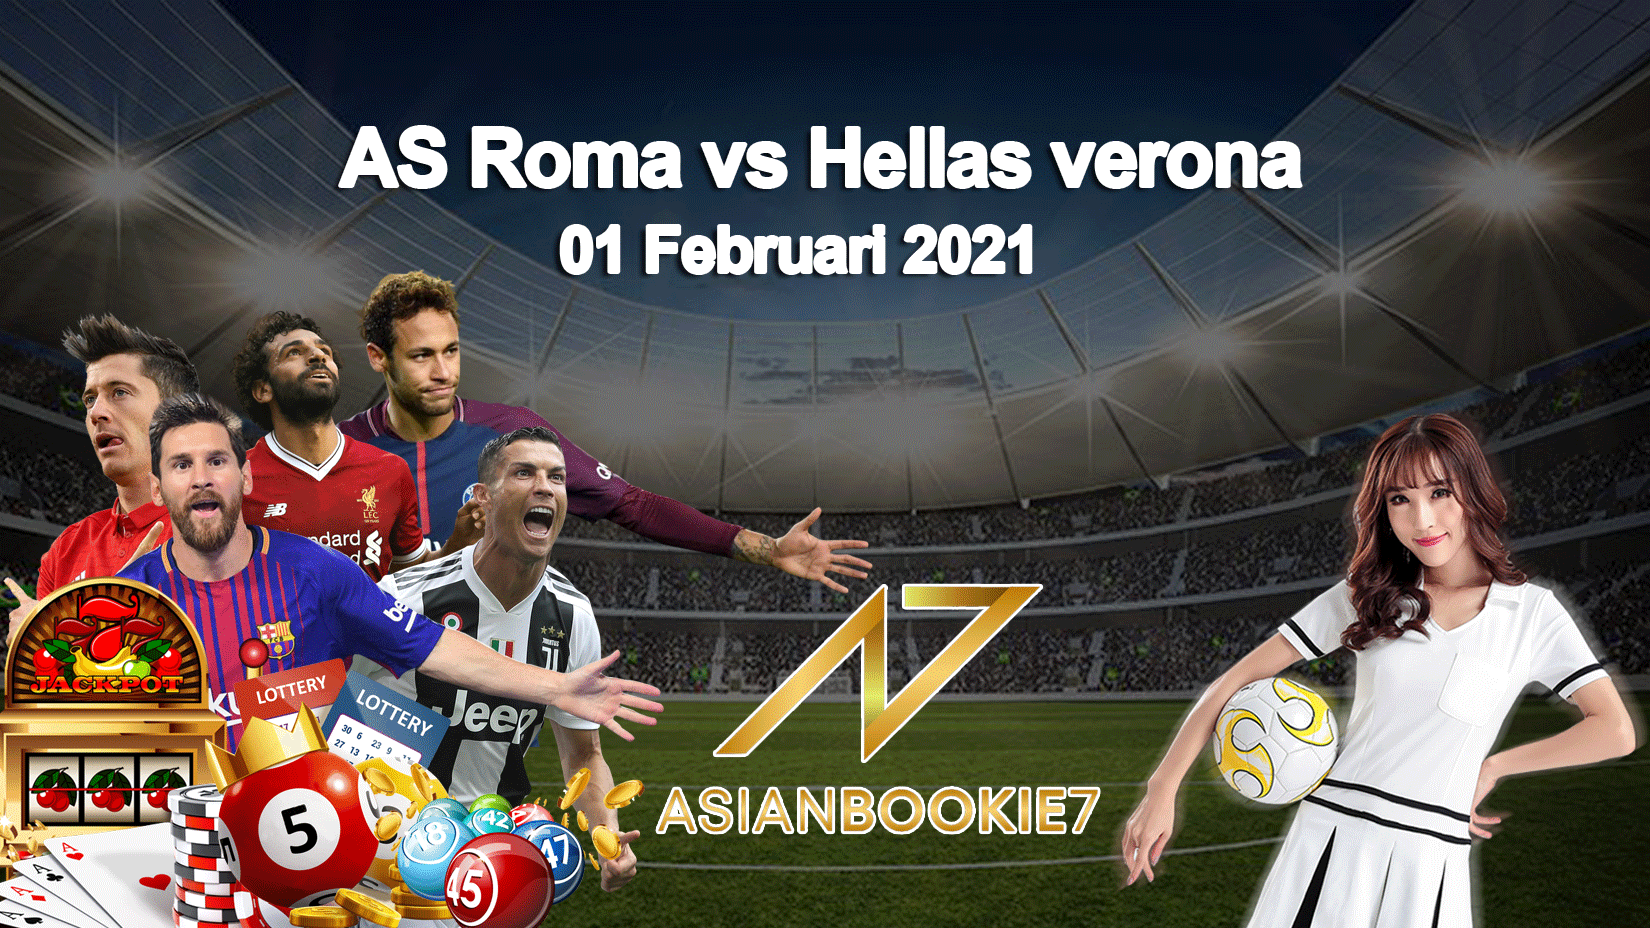 Prediksi-AS-Roma-vs-Hellas-verona-01-Februari-2021